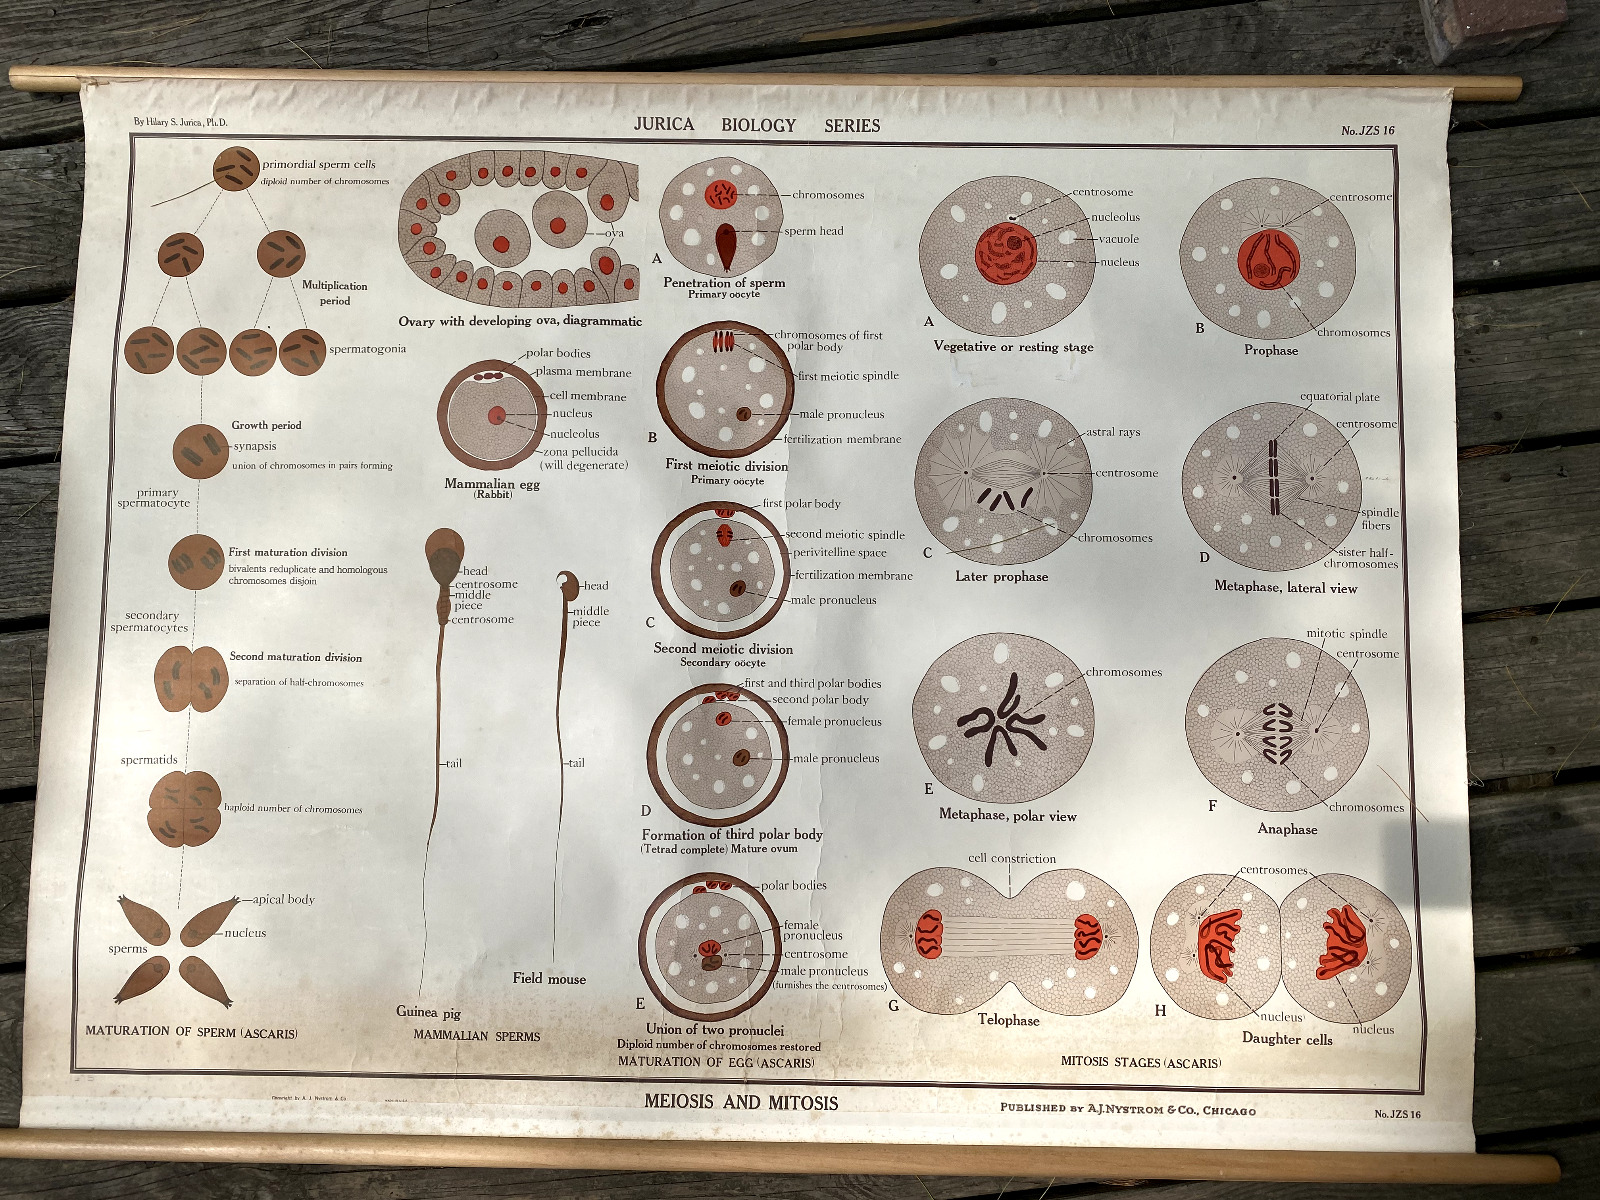 Jurica biology series, JZS 16, meiosis and mitosis, vintage poster